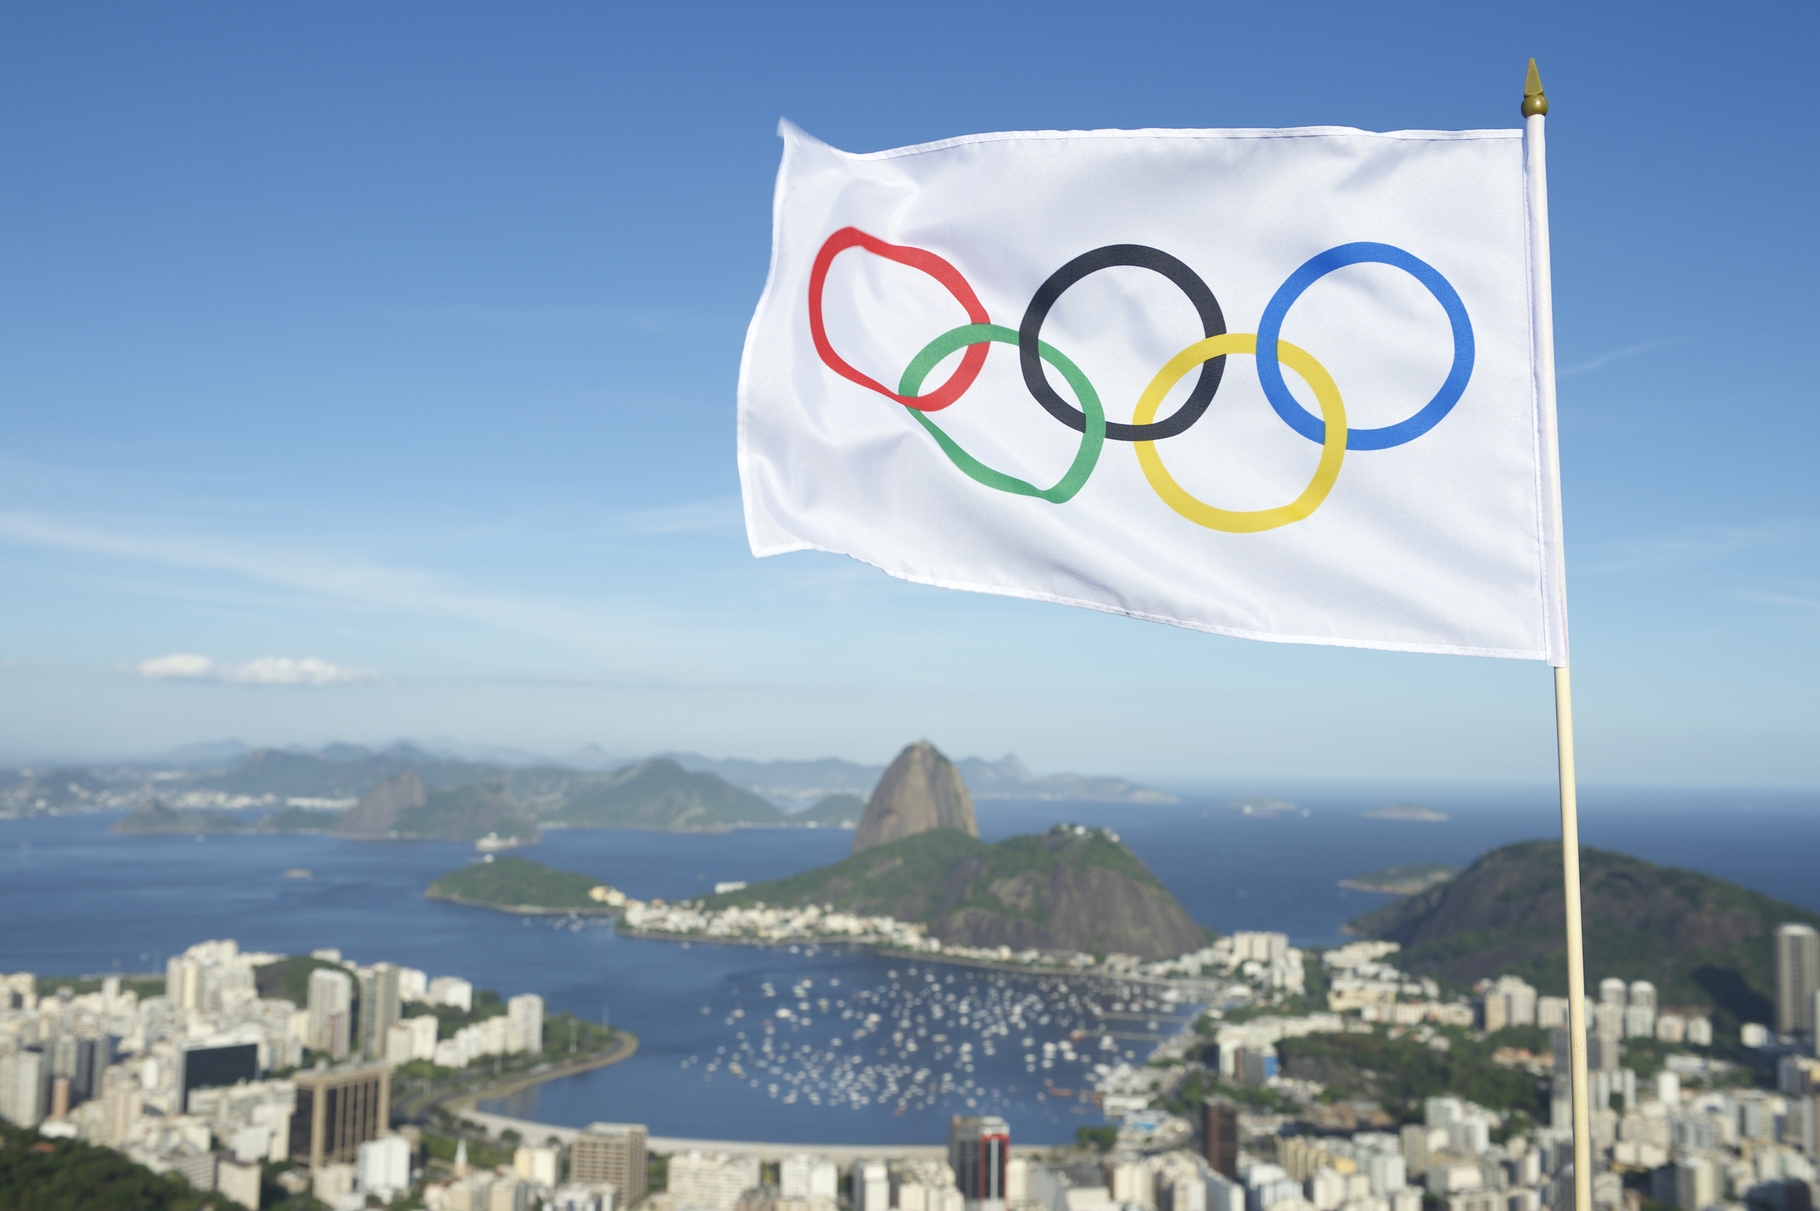 Google espère bien profiter de l’effet des Jeux olympiques de Rio pour mettre en avant ses services en ligne et applications mobiles et rafler au passage une grosse part des revenus publicitaires numériques générés par cet évènement planétaire. © Lazyllama, Shutterstock